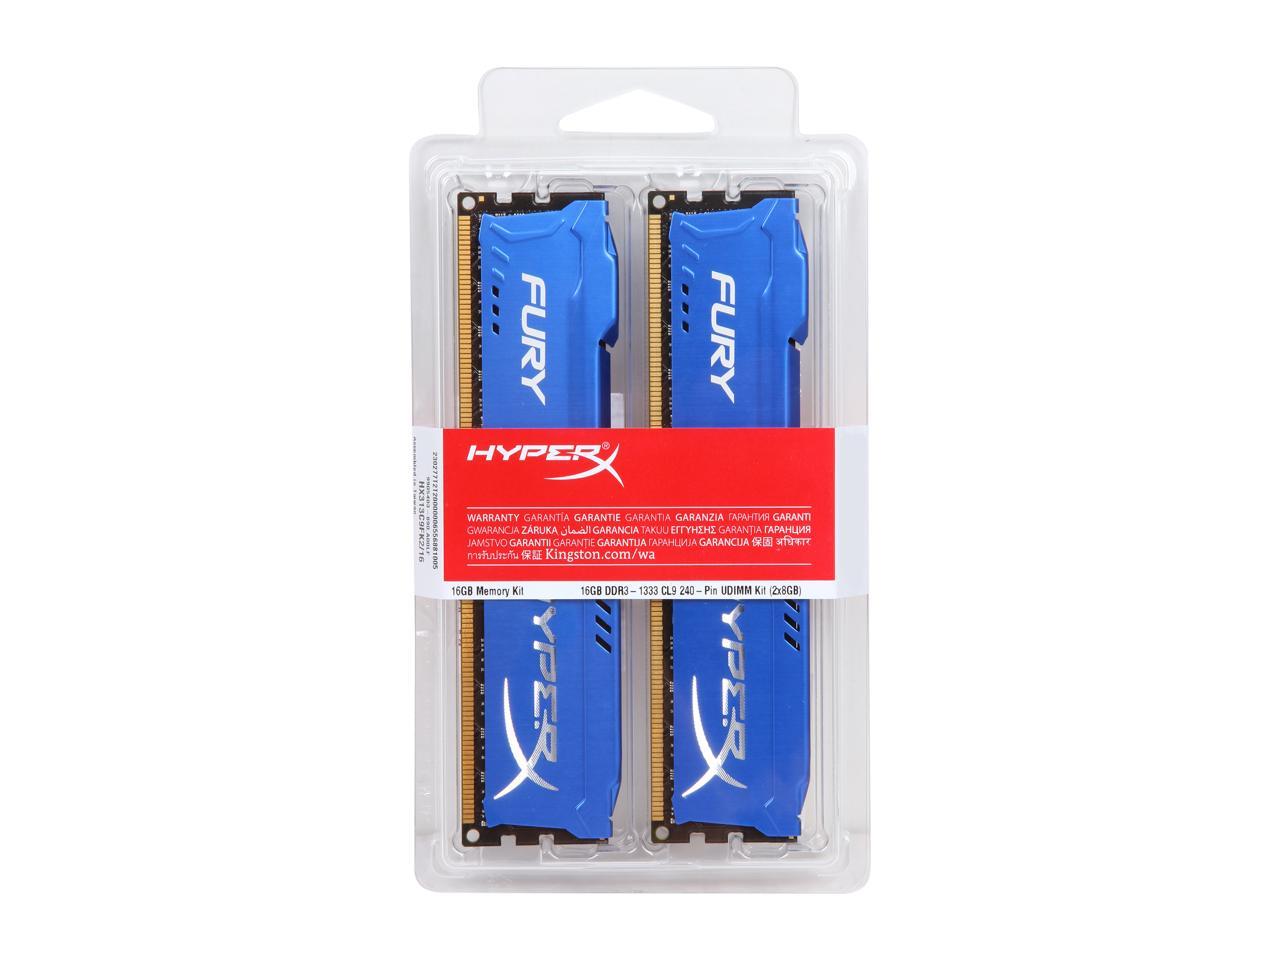 HyperX Fury HX313C9FRK2/16 Mémoire RAM 16Go 1333MHz DDR3 CL9 DIMM Kit 2x8Go Rouge